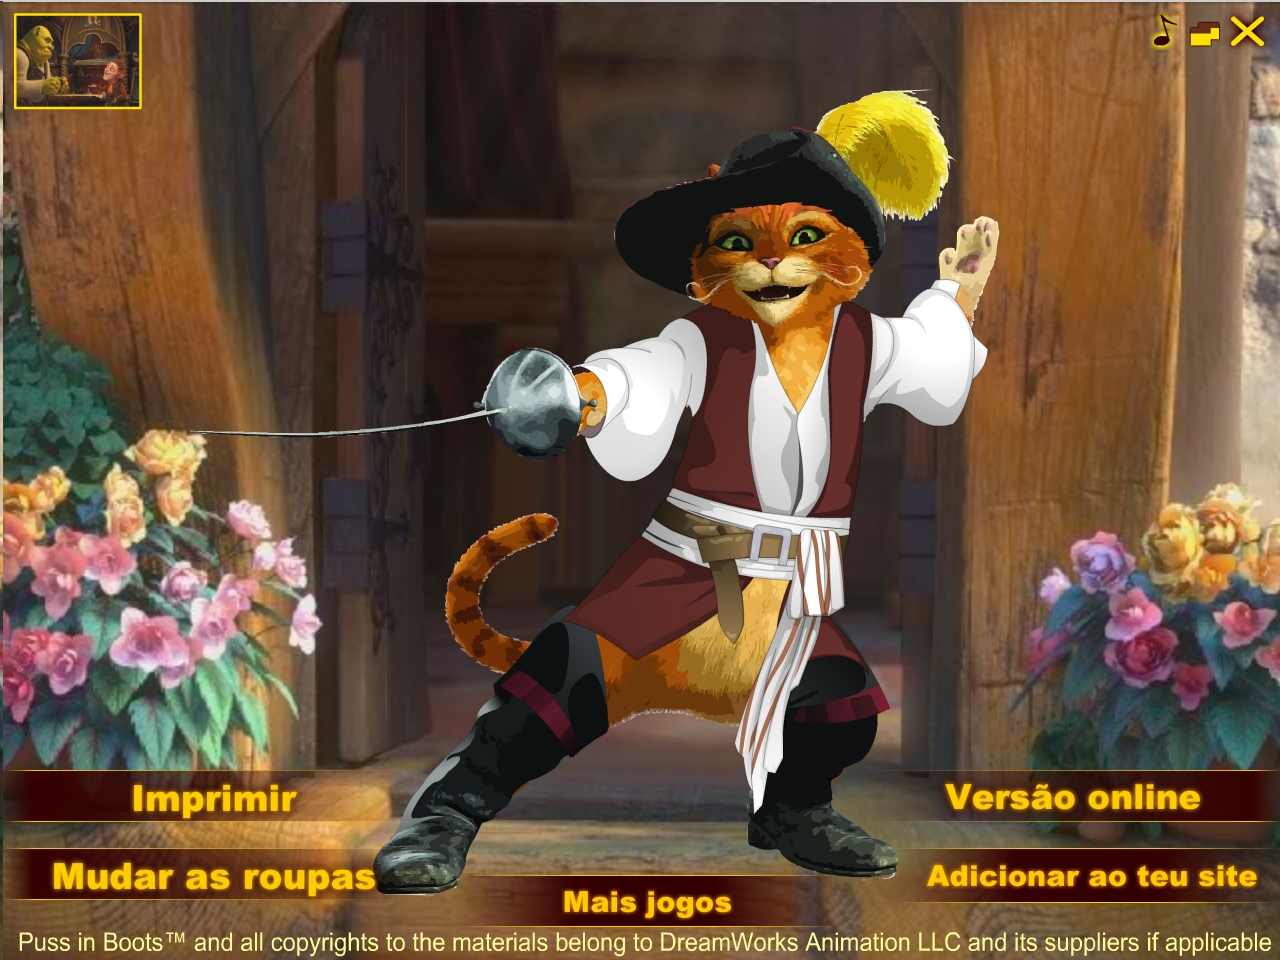 O Gato das Botas: Jogo de Vestir Game Download for PC